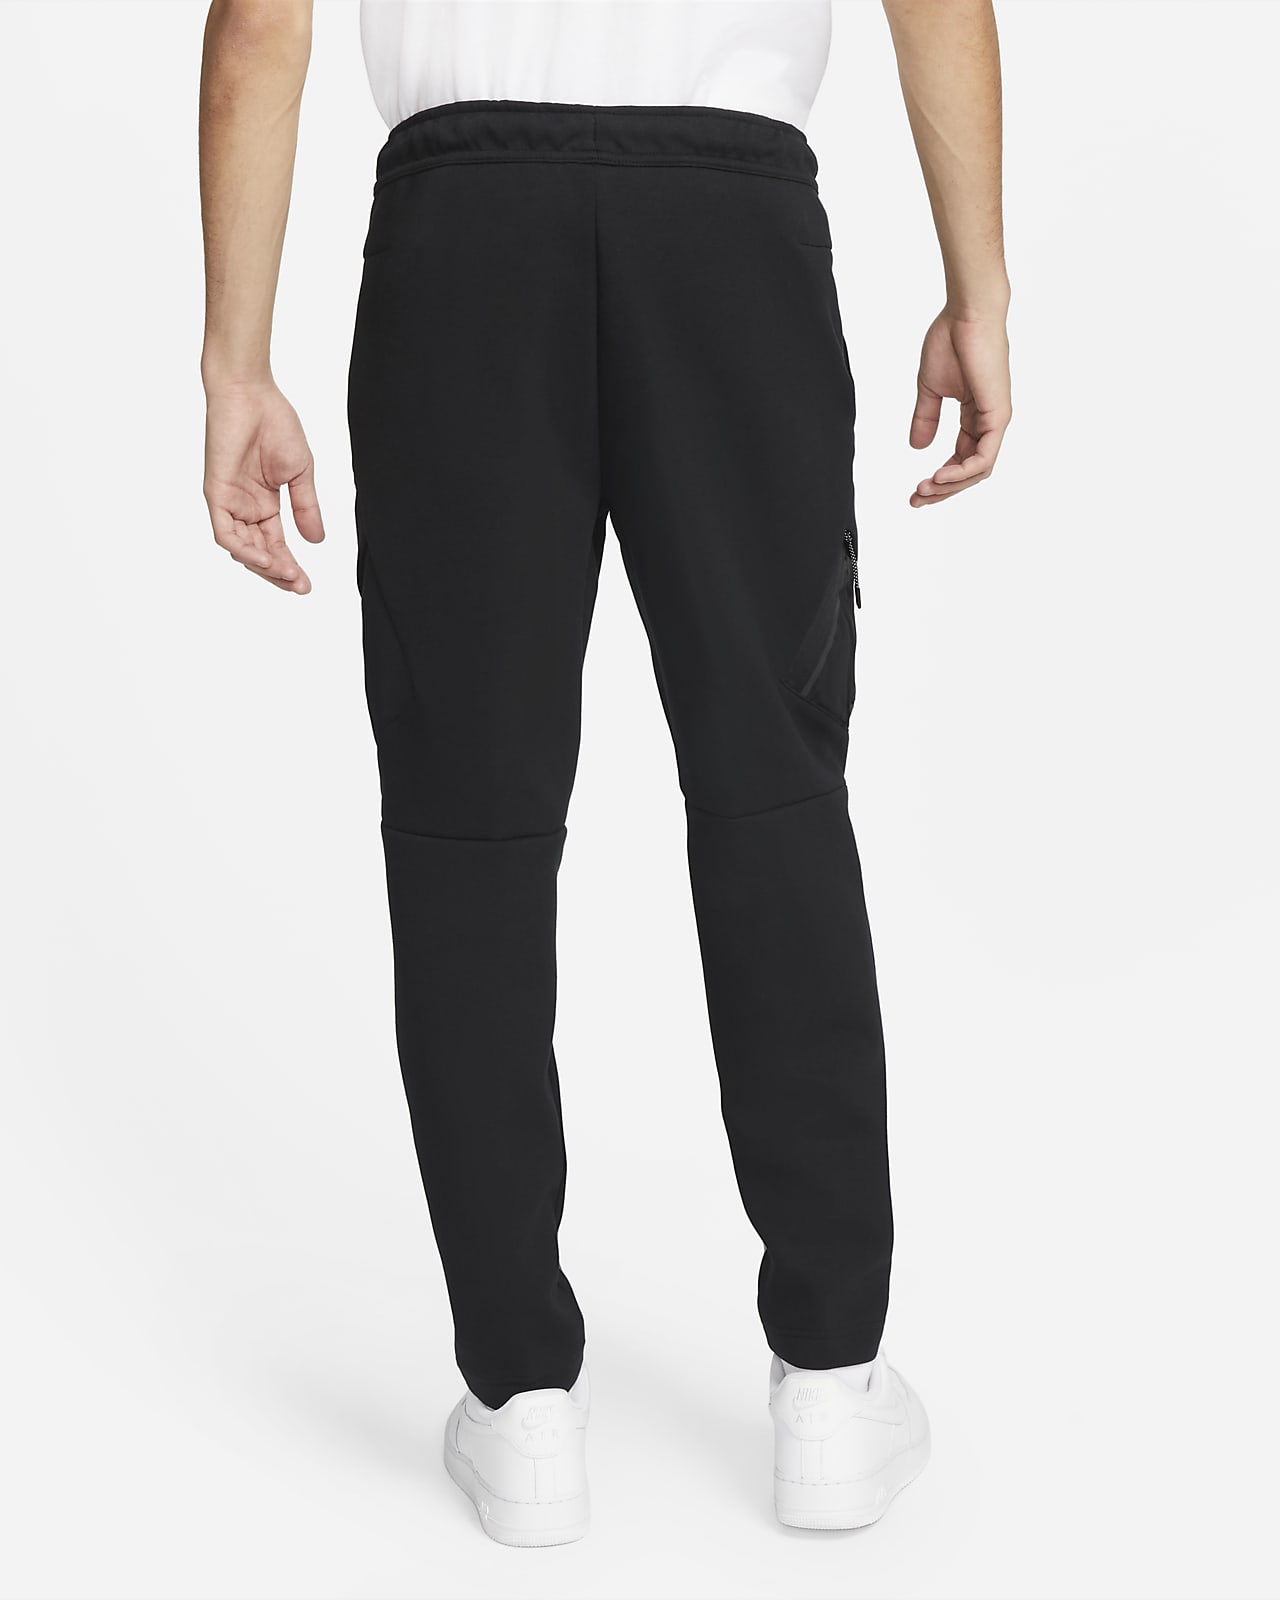 Nike Sportswear Men's Standard Fit Fleece Trousers 